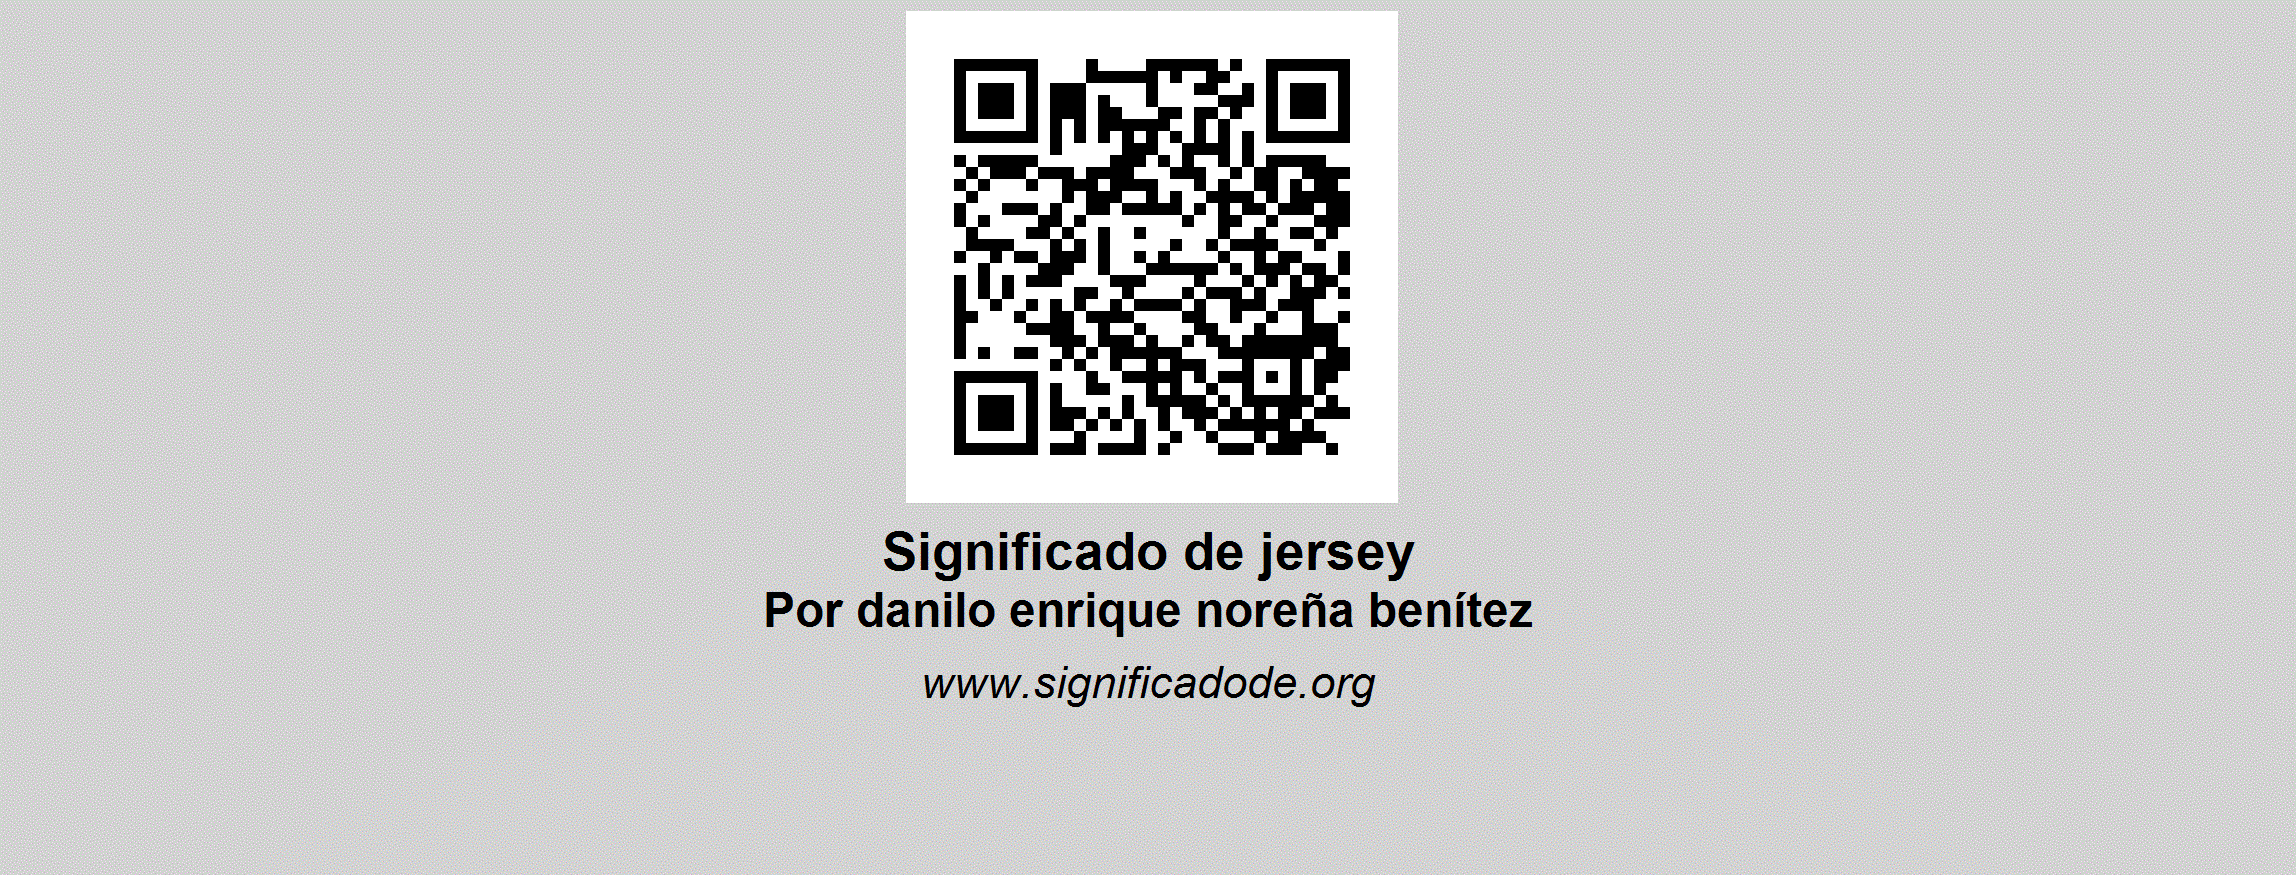 Socialismo Reducción de precios fuego JERSEY | Significado de jersey por Danilo Enrique Noreña Benítez